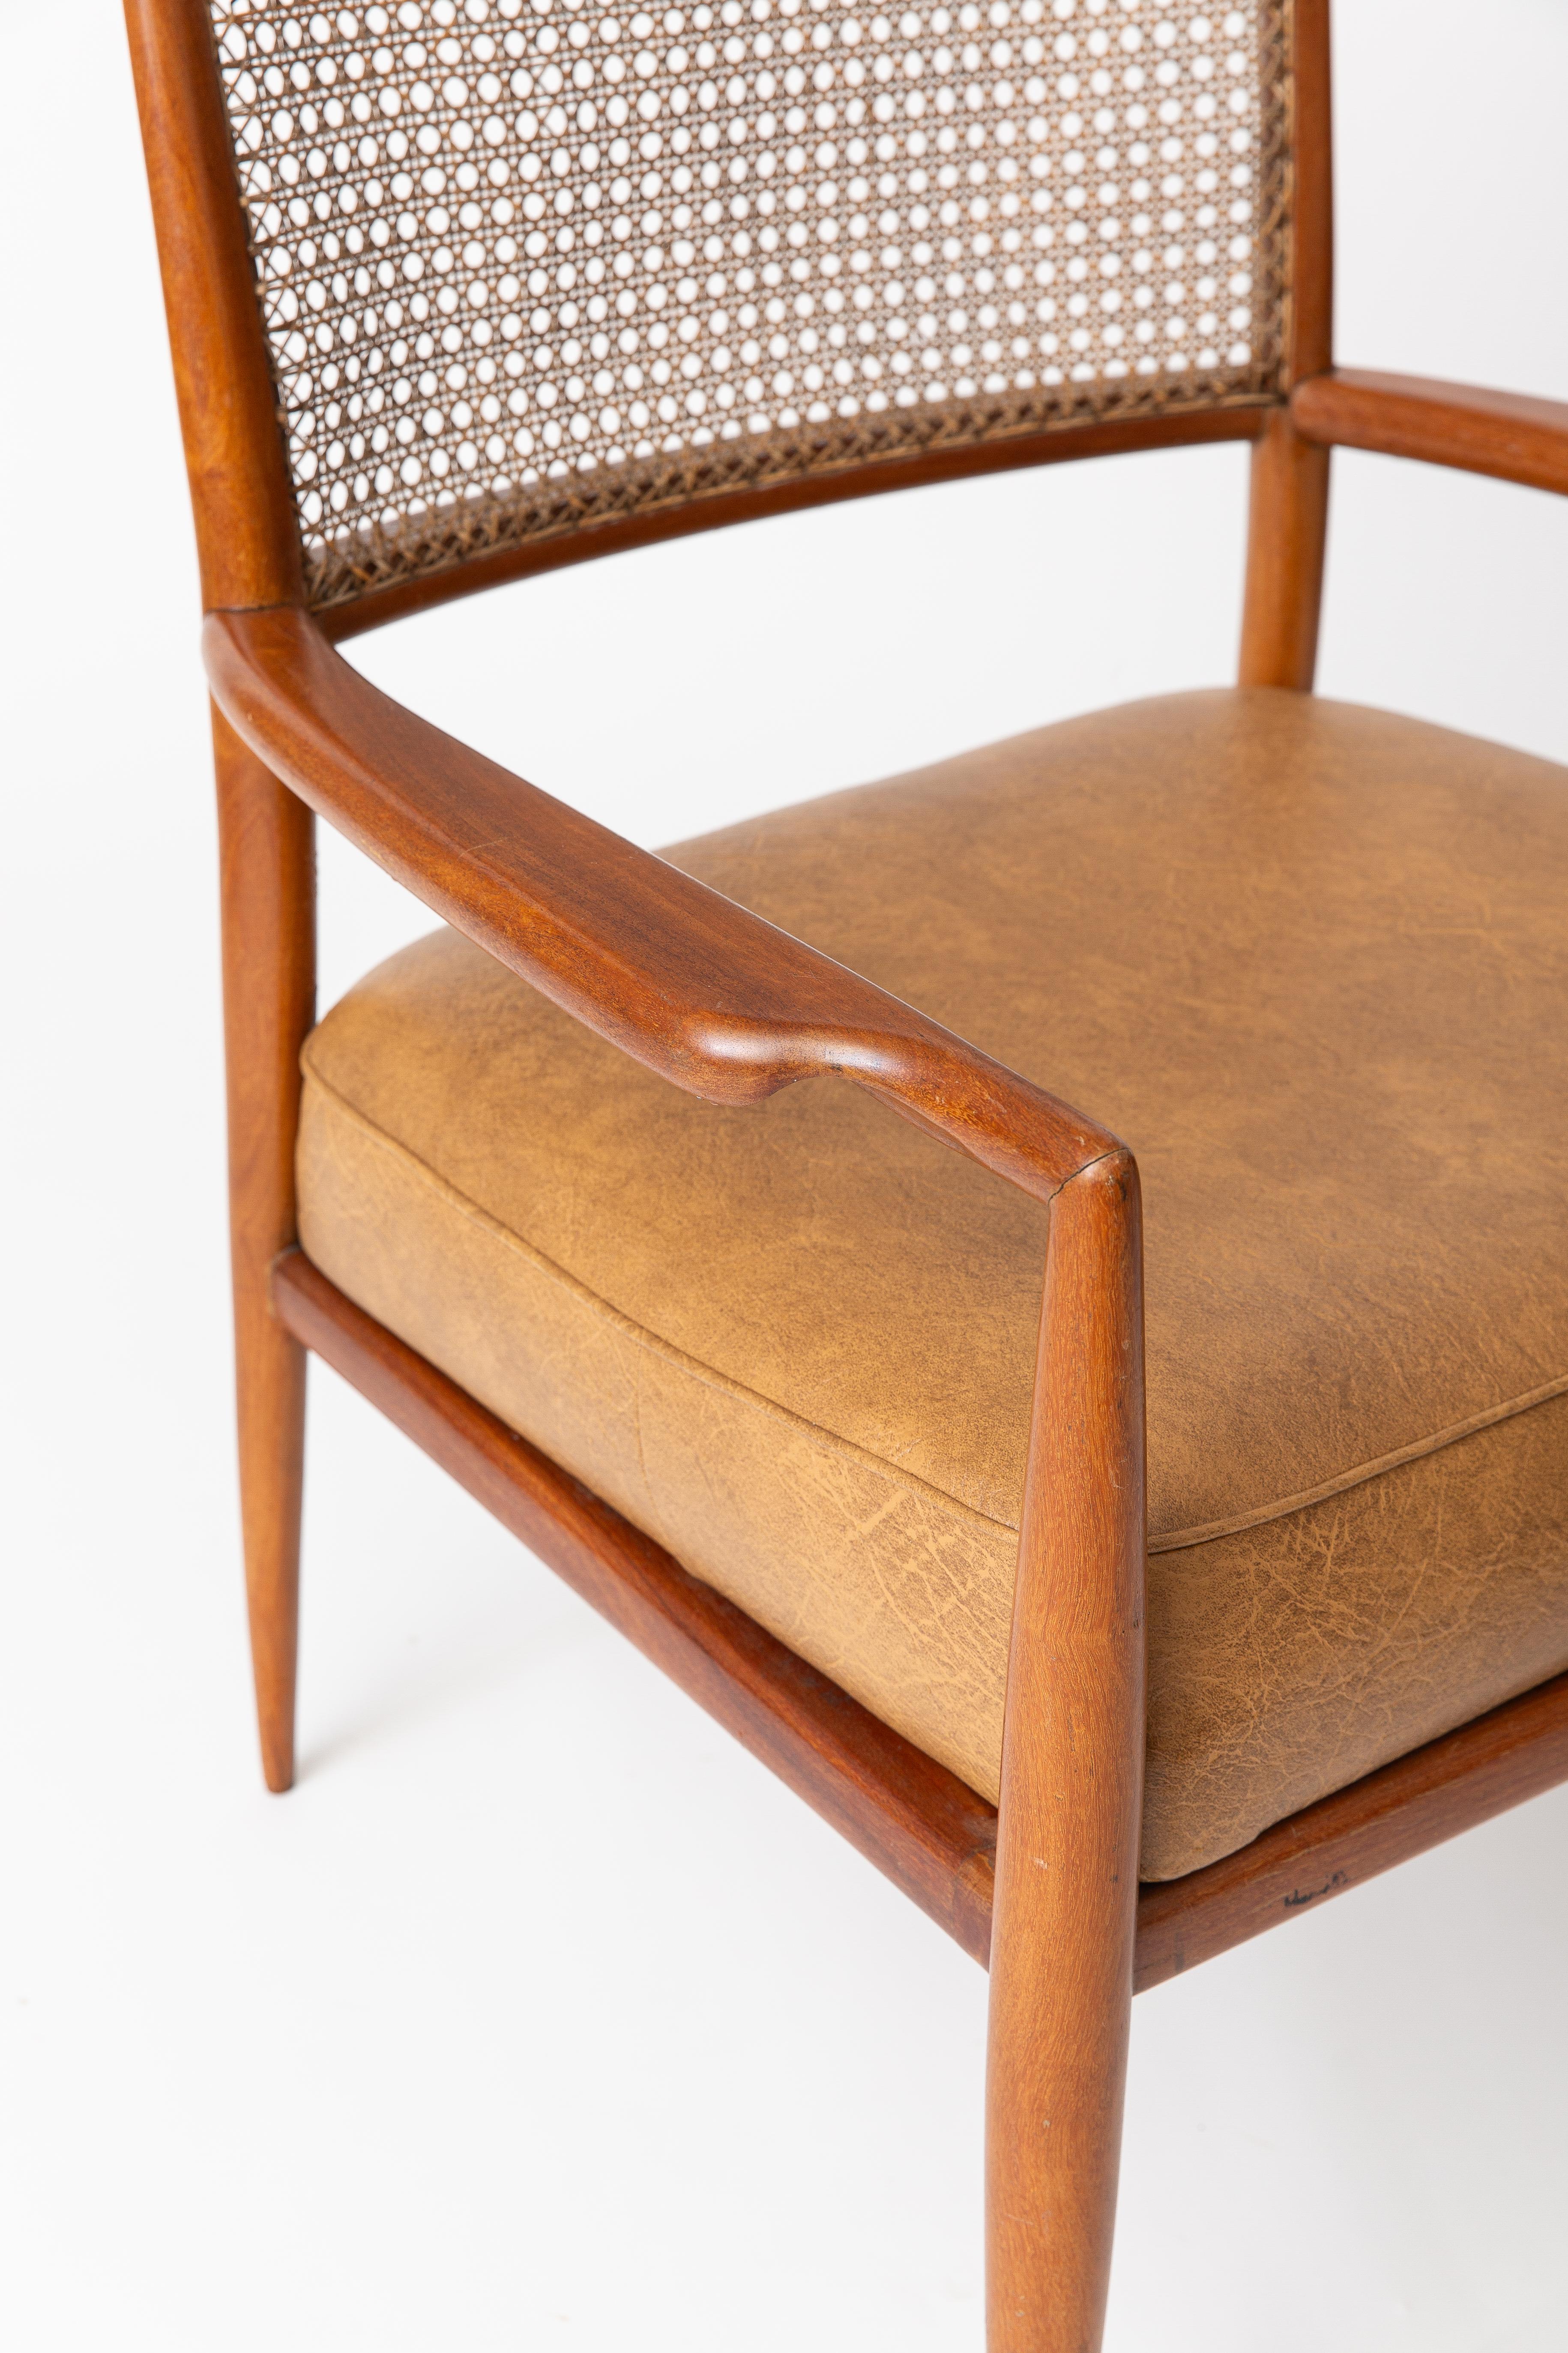 Dieser MF5-Stuhl wurde von Carlos Milan von der Designfirma Branco e Preto in Brasilien entworfen. Er besteht aus Massivholz, geflochtenem Rohr und originaler Polsterung. 